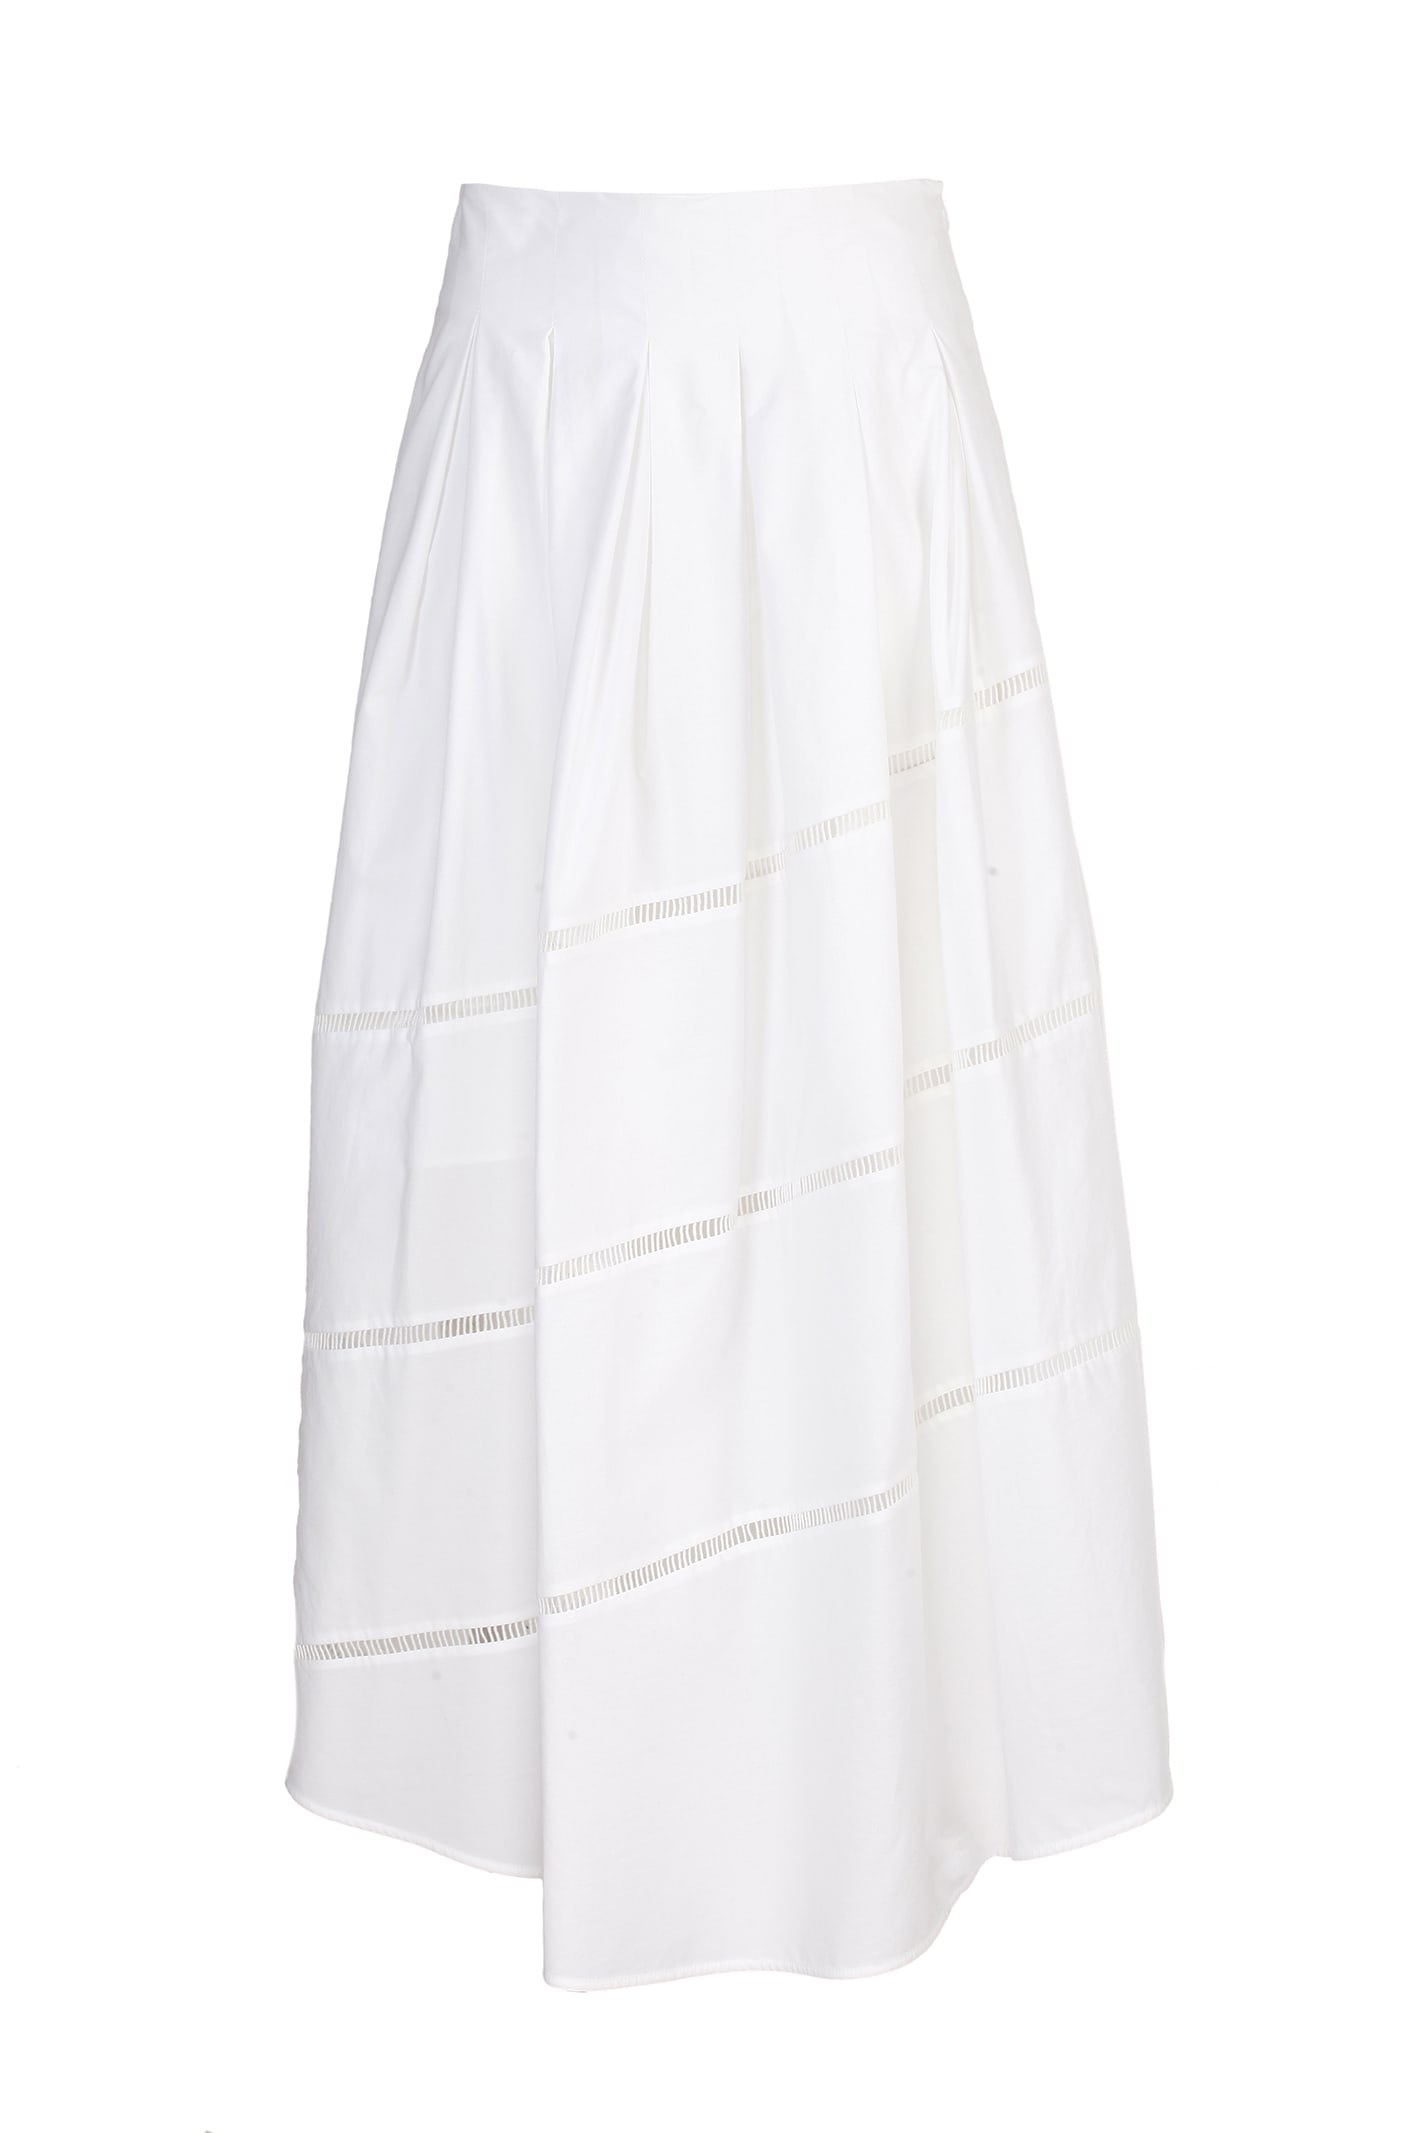 Brunello Cucinelli cotton poplin skirt